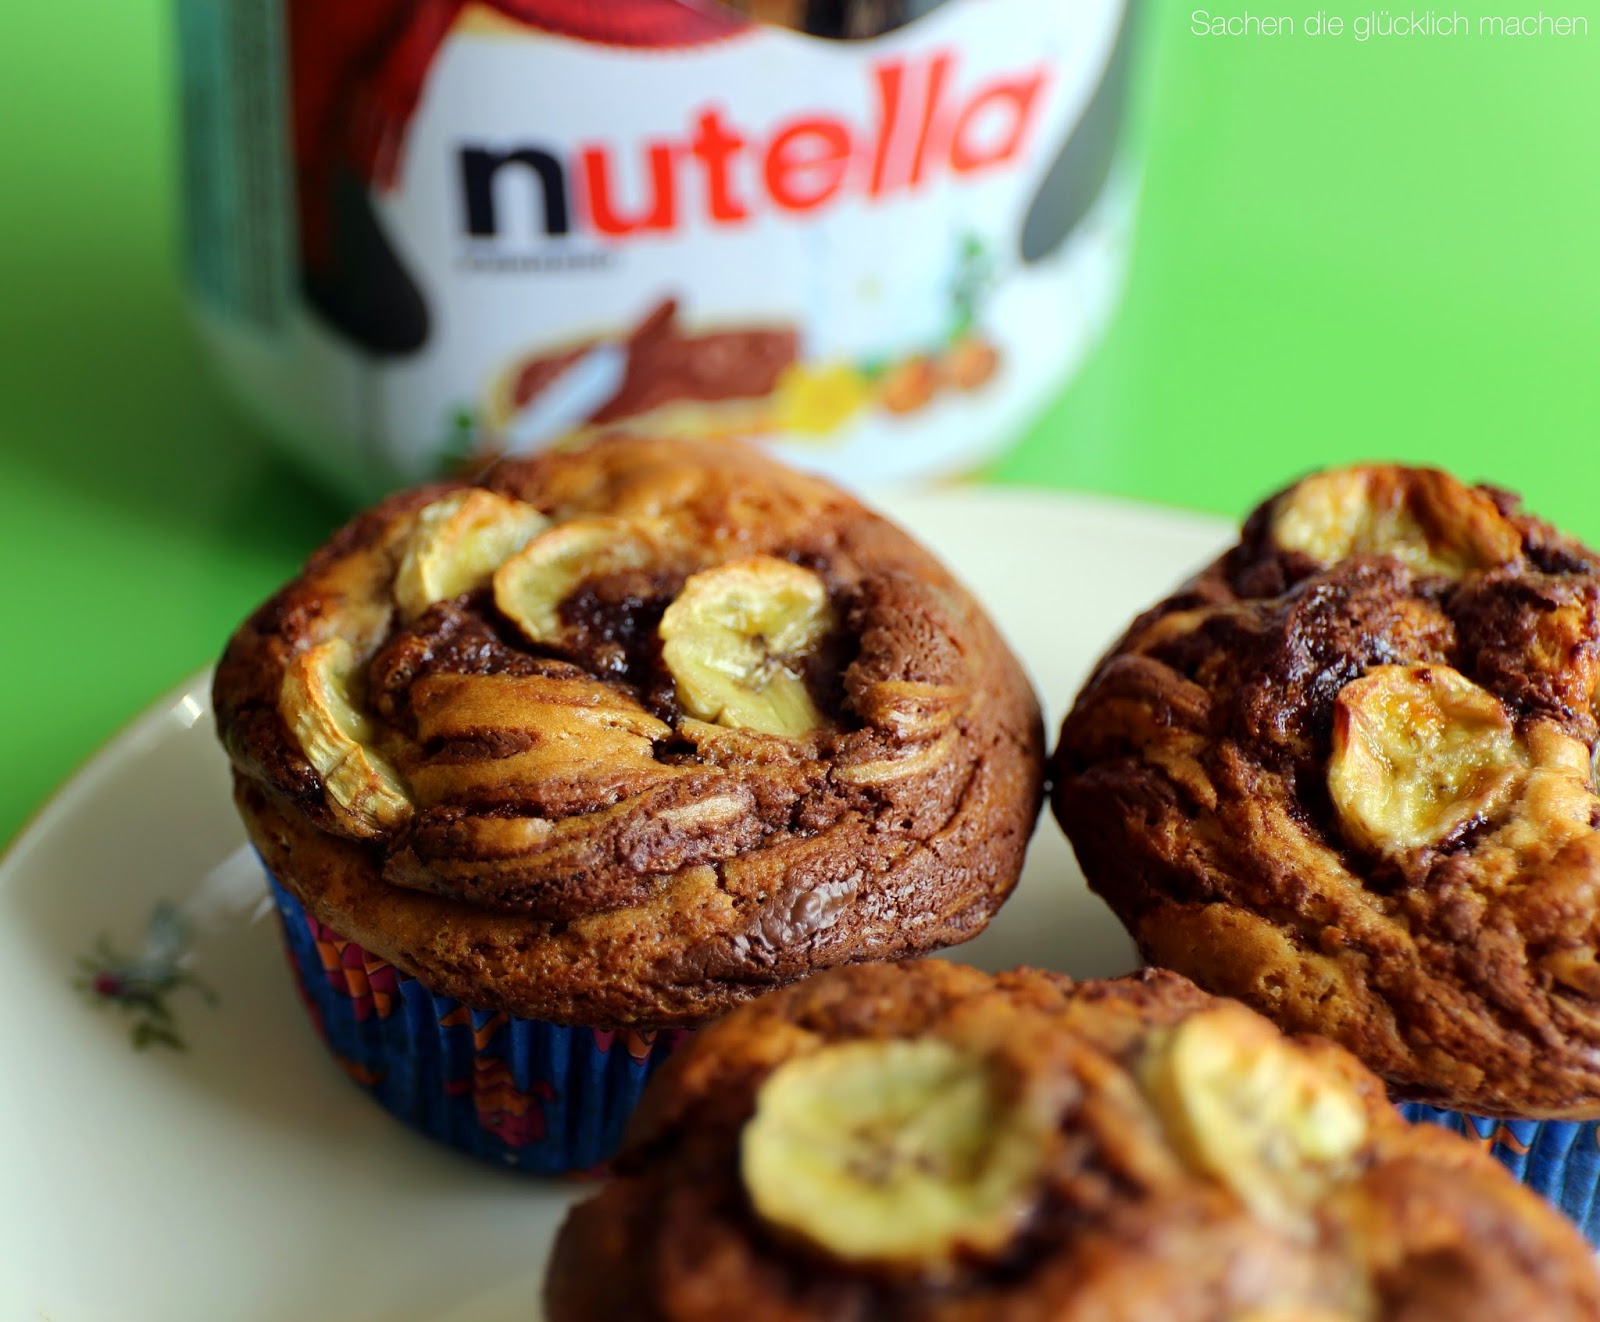 Sachen die glücklich machen: Bananen-Nutella-Muffins